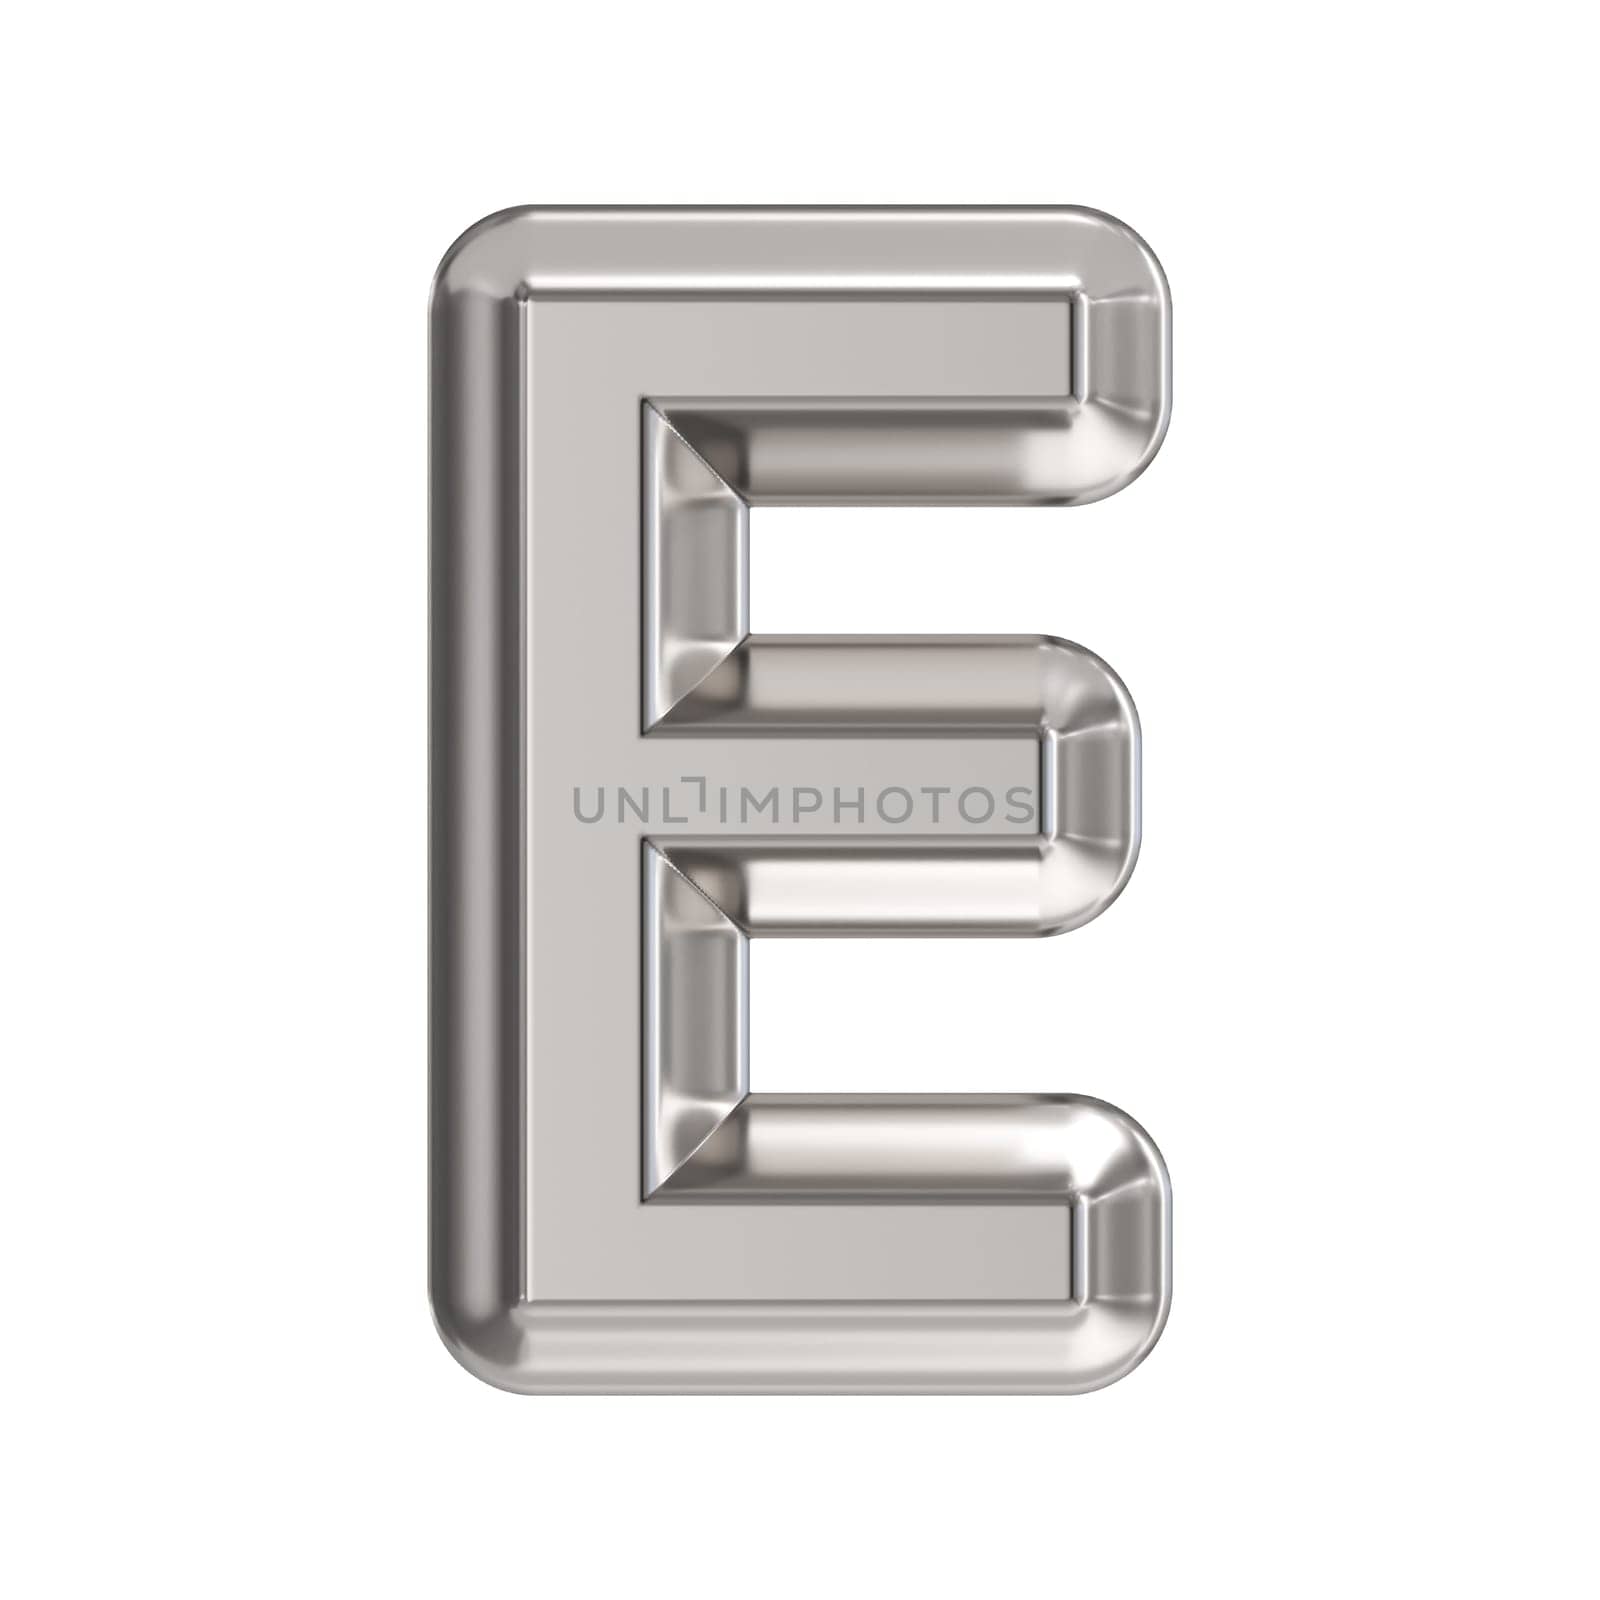 Steel font Letter E 3D rendering illustration isolated on white background